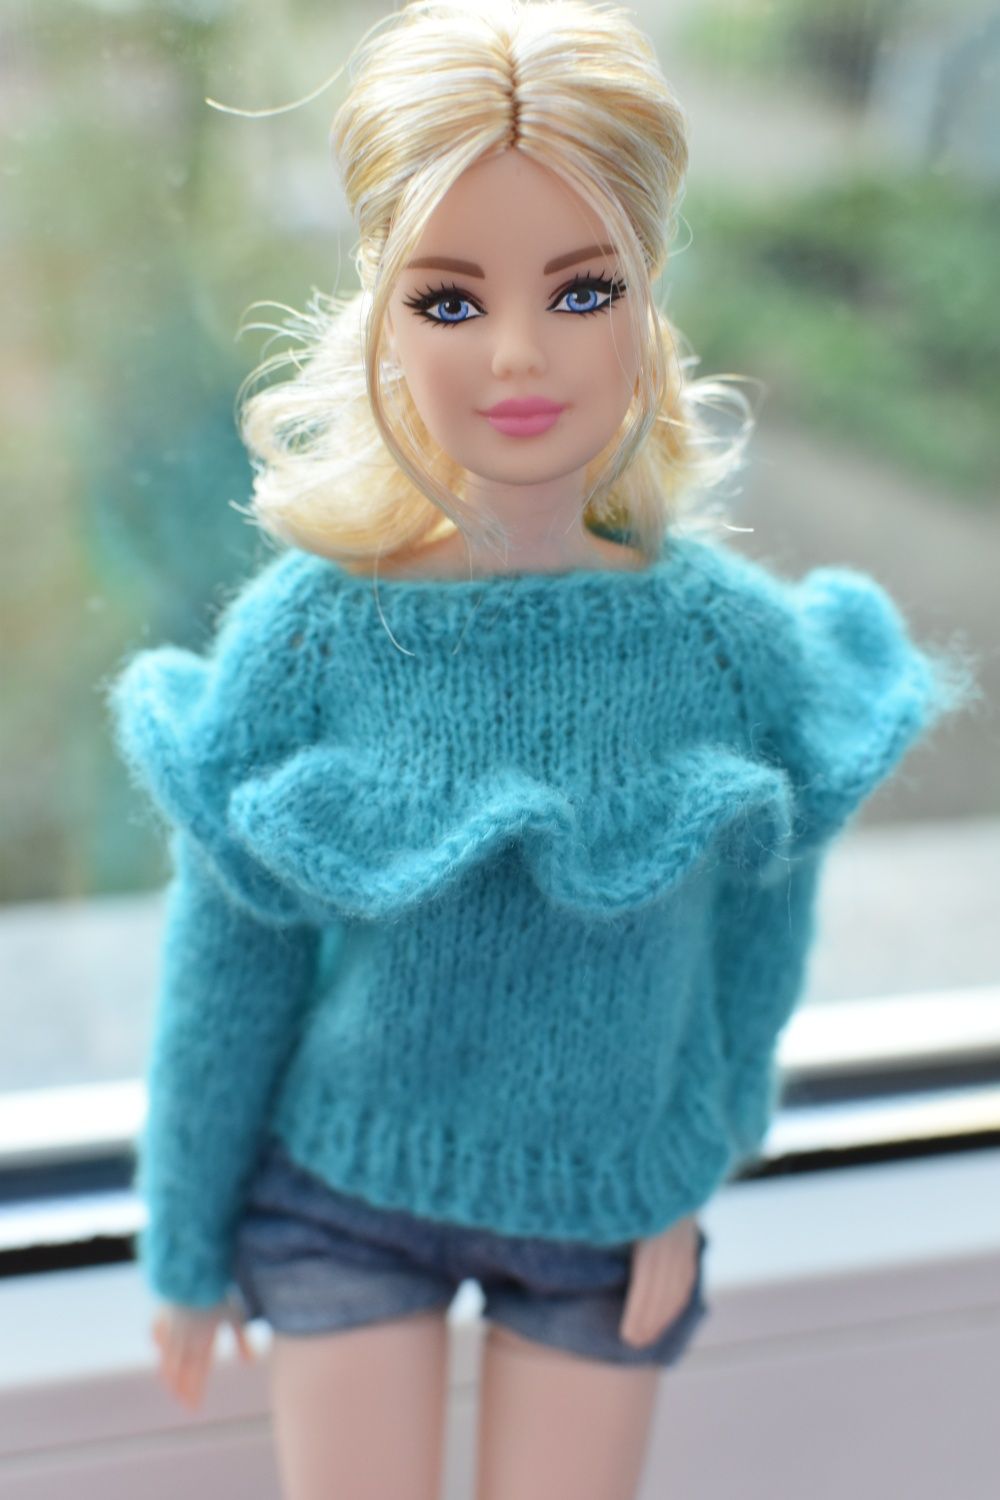 Sweterek dla lalki Barbie, Integrity toys, Poppy Parker